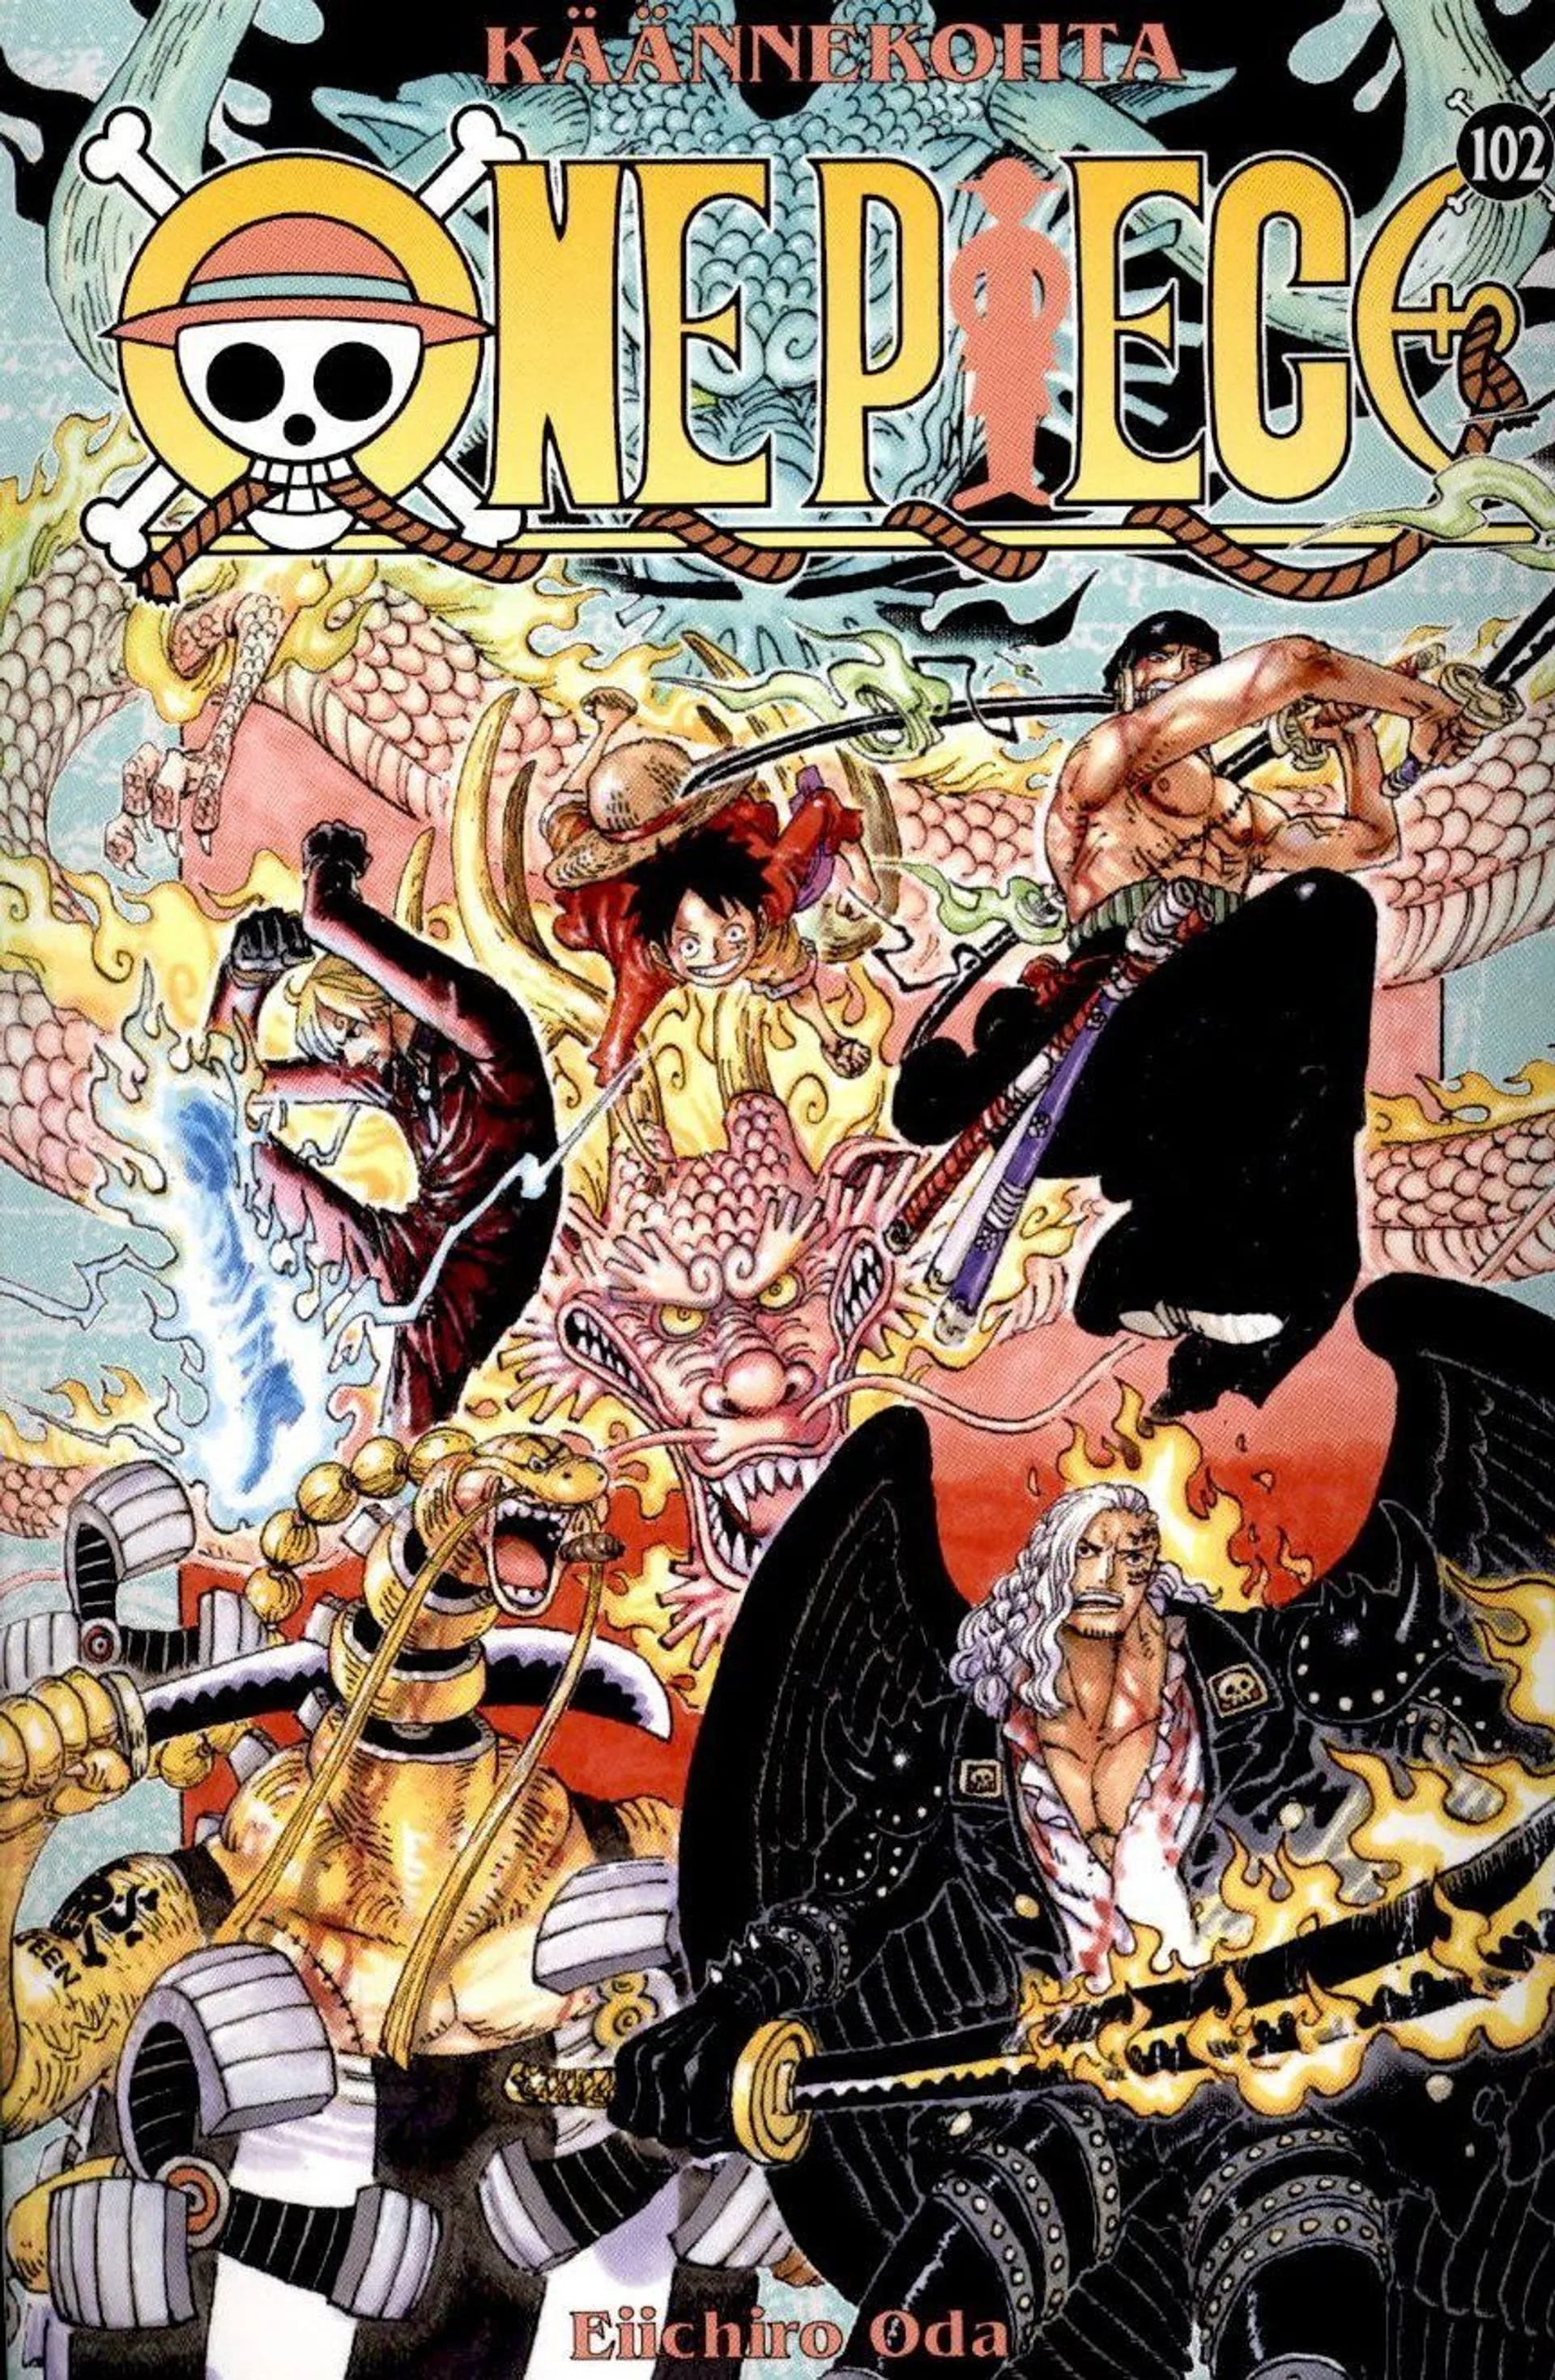 Oda, One Piece 102